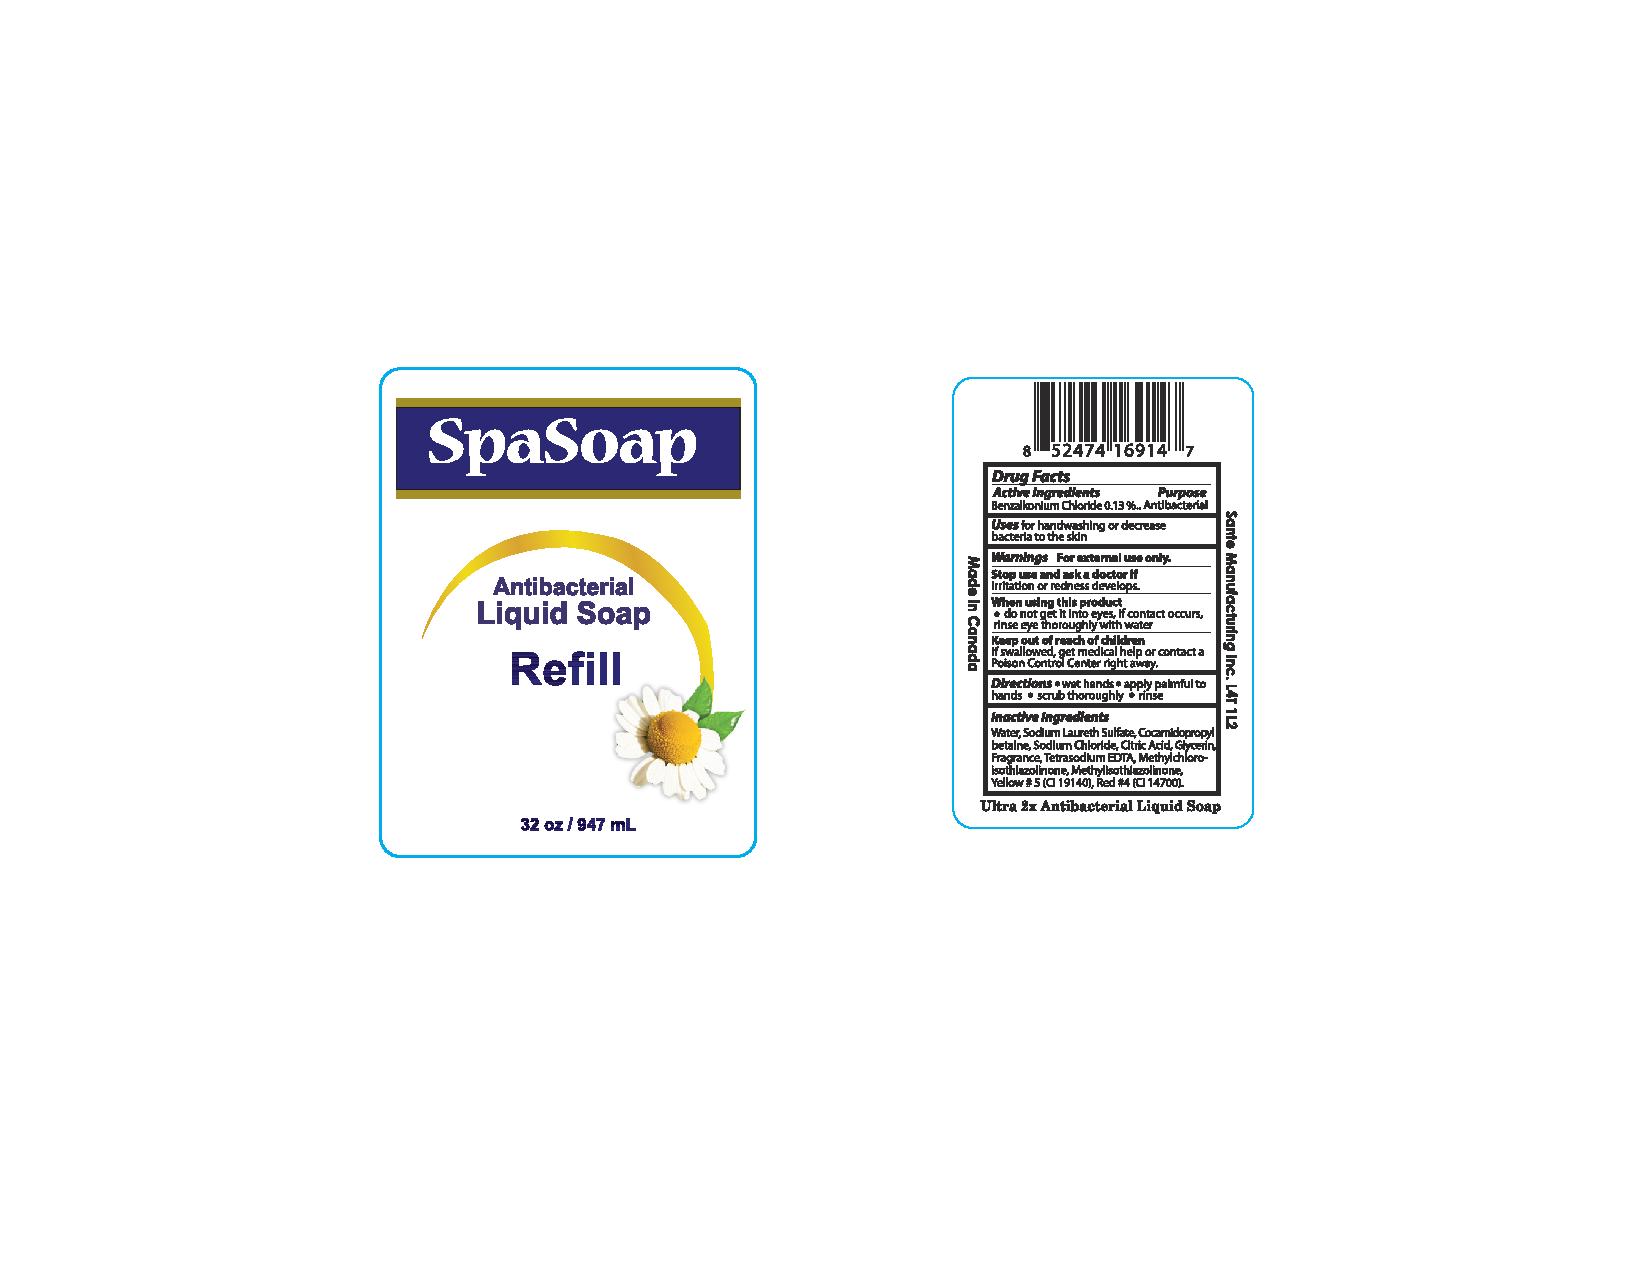 Spa Soap Antibacterial Liquid Soap